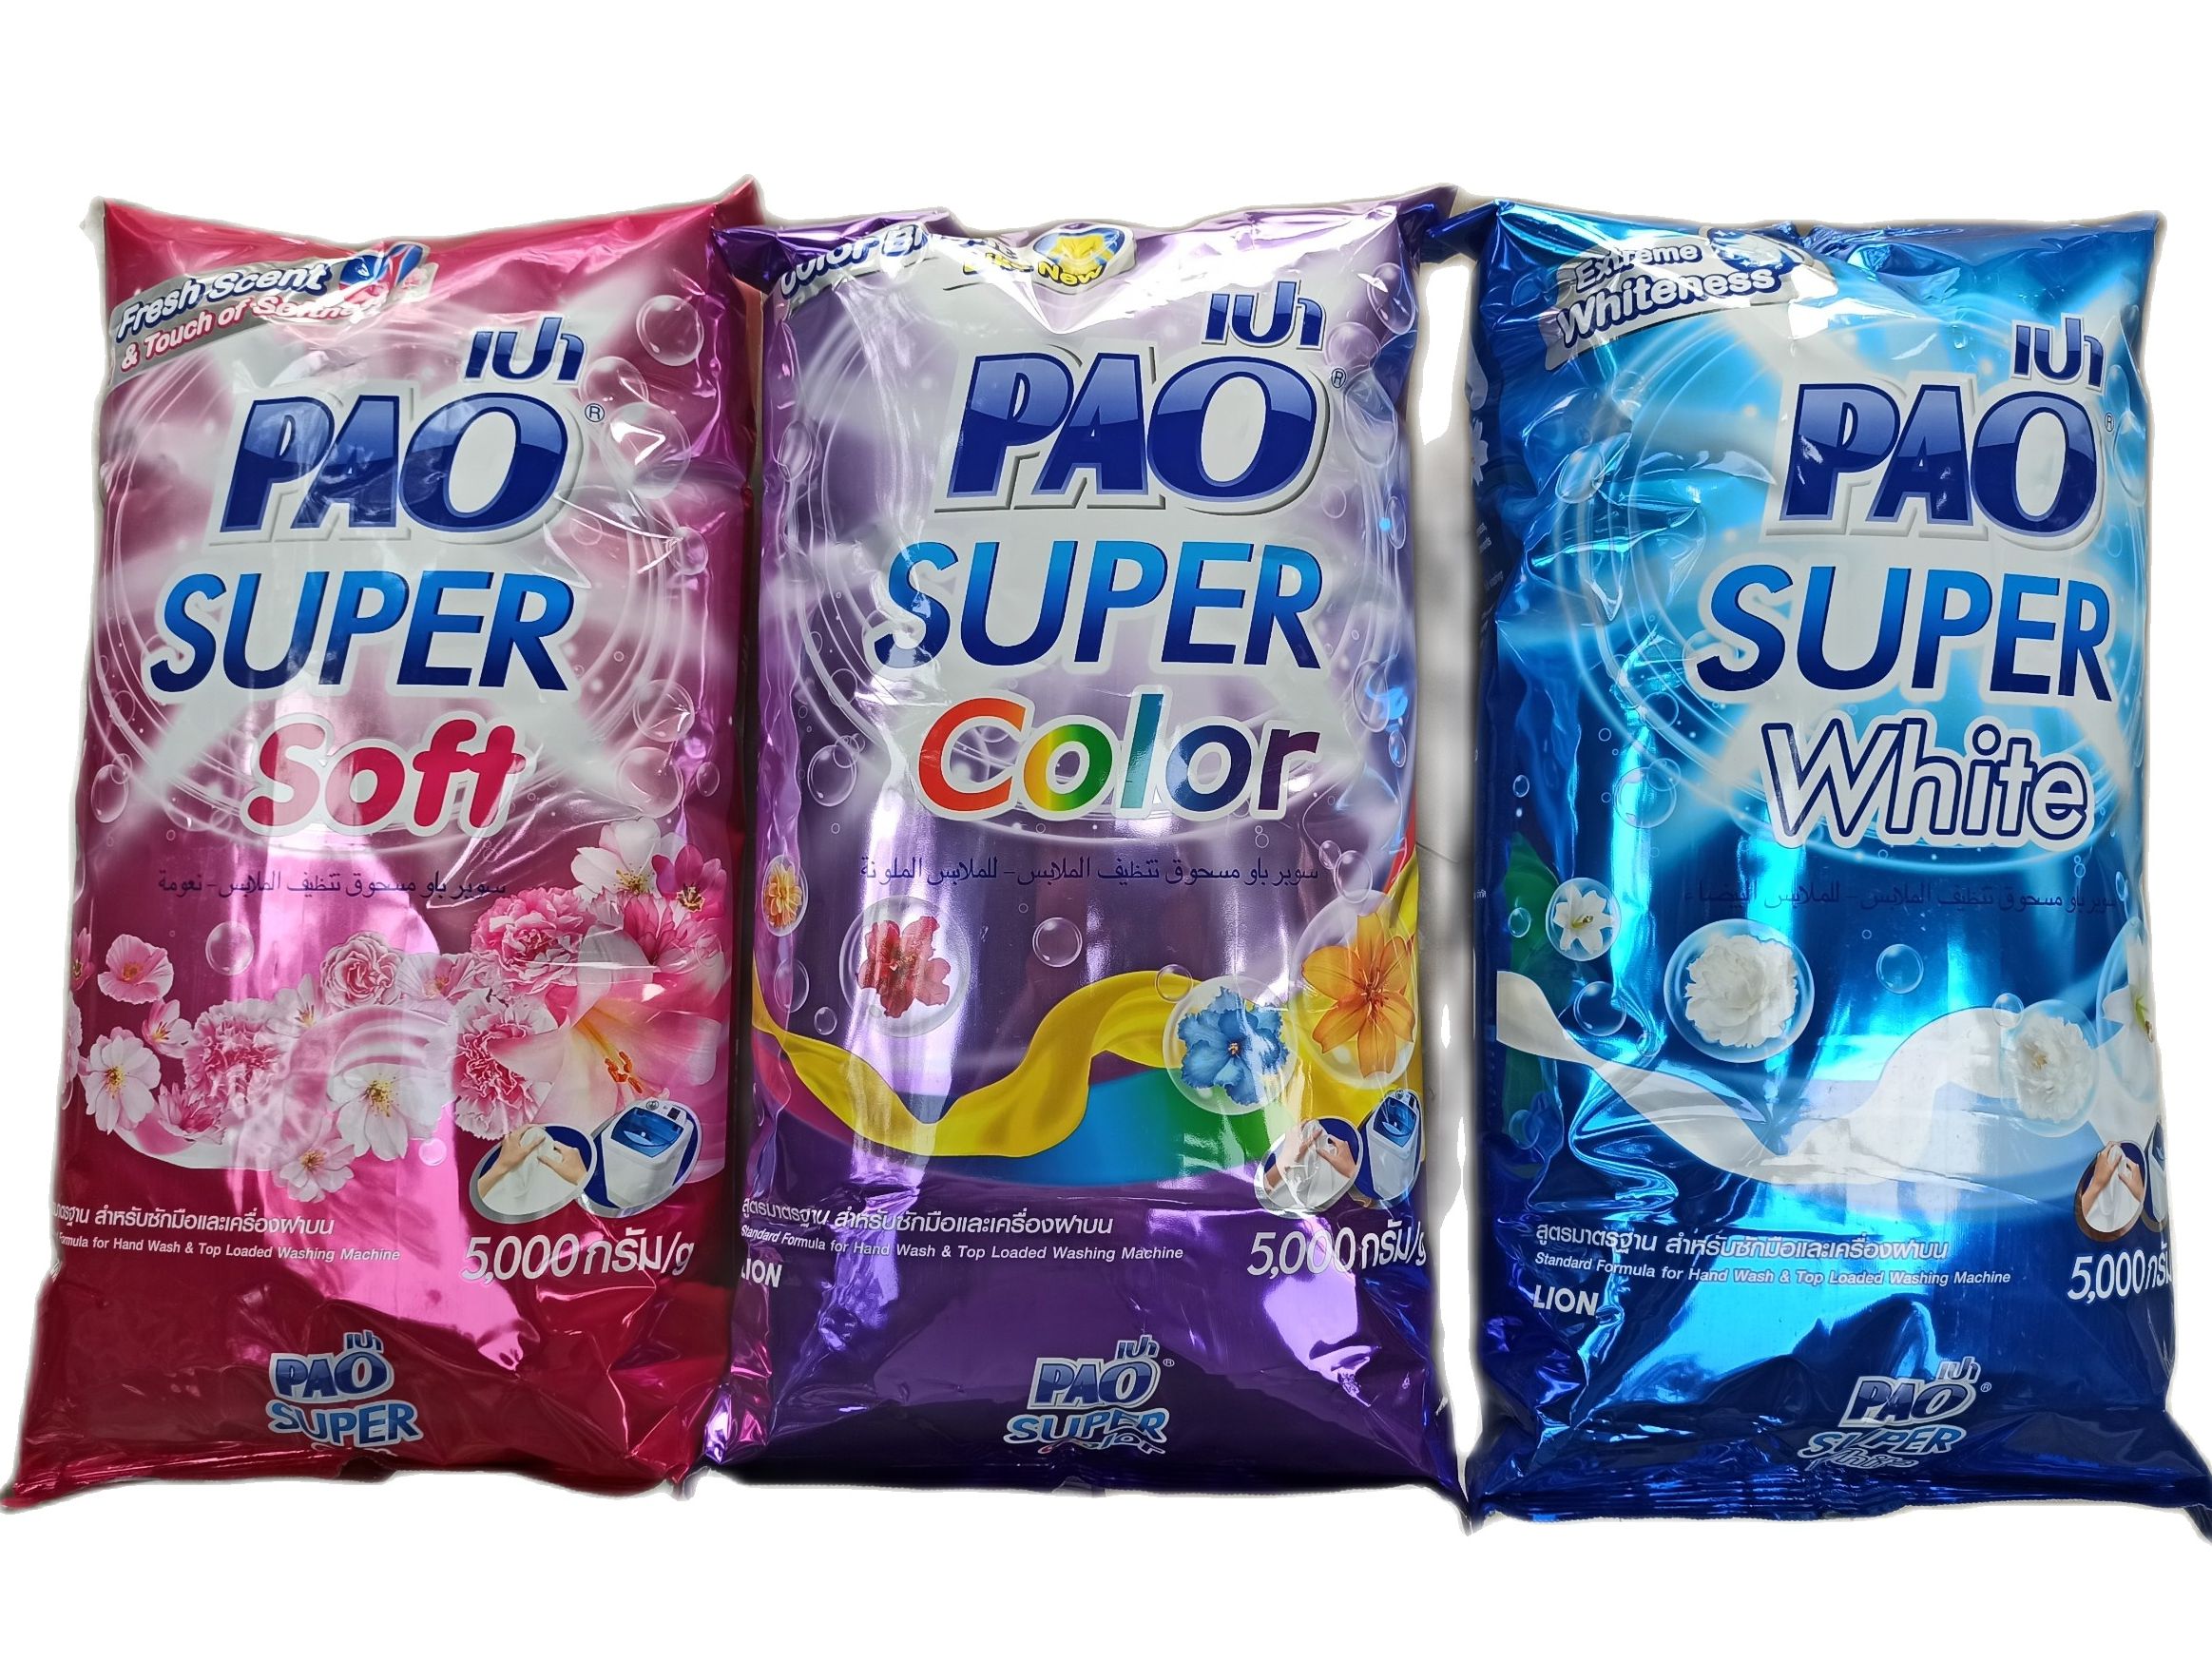 Bột giặt Pao 5kg, bột giặt siêu thơm, siêu sạch, hàng nhập khẩu Thái Lan thumbnail